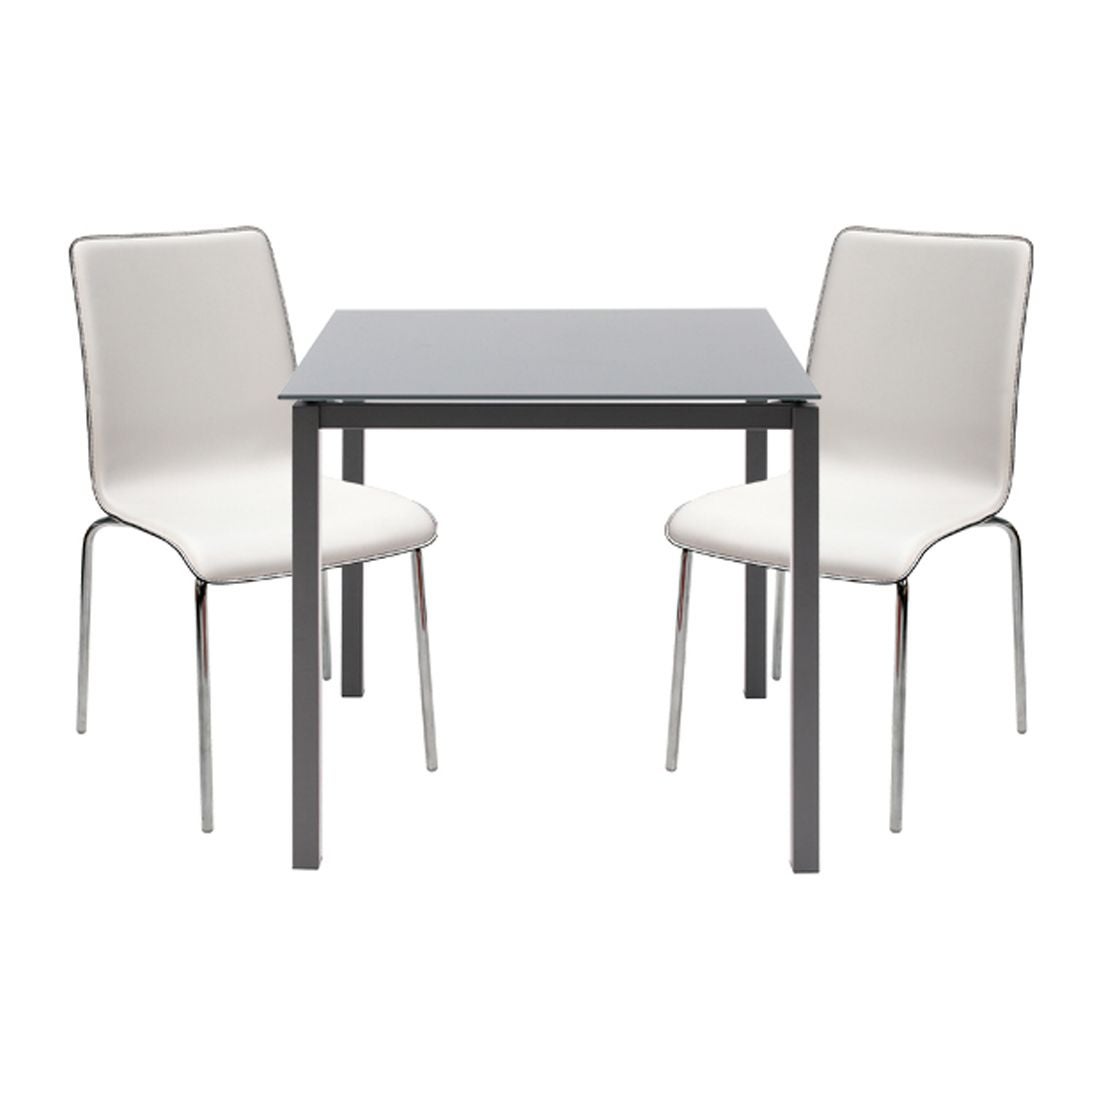 โต๊ะทานอาหาร โต๊ะอาหารขาเหล็กท๊อปกระจก รุ่น Ruber สีสีเทา-SB Design Square